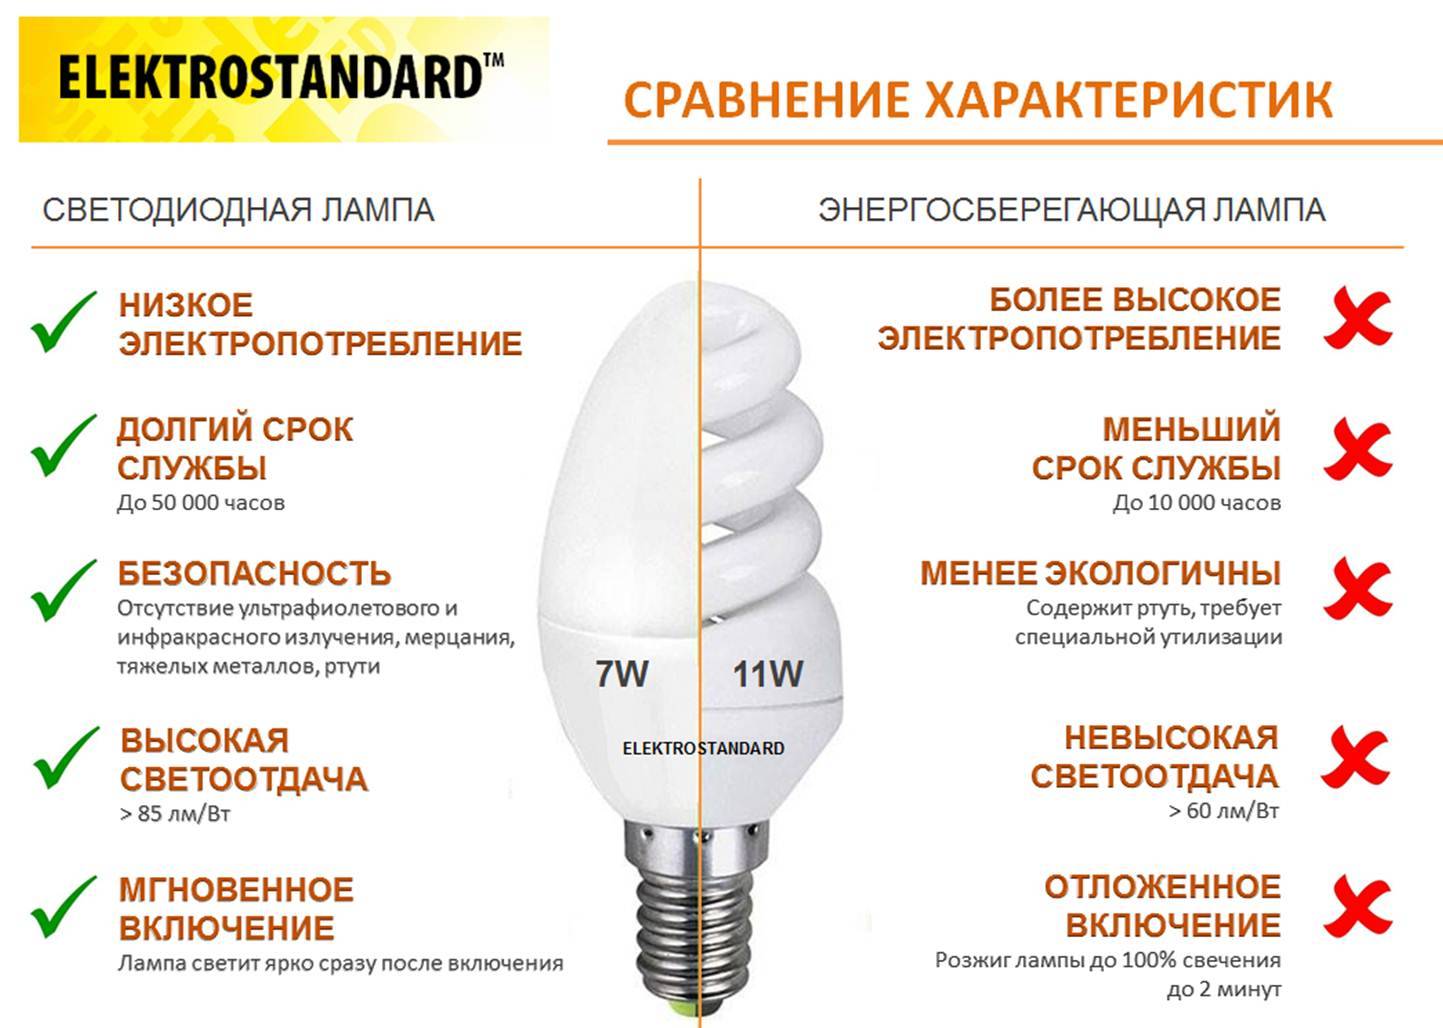 Как сделать светодиодное освещение для дома? советы- обзор и плюсы и минусы и какие лучше выбрать лампы? обзор +видео